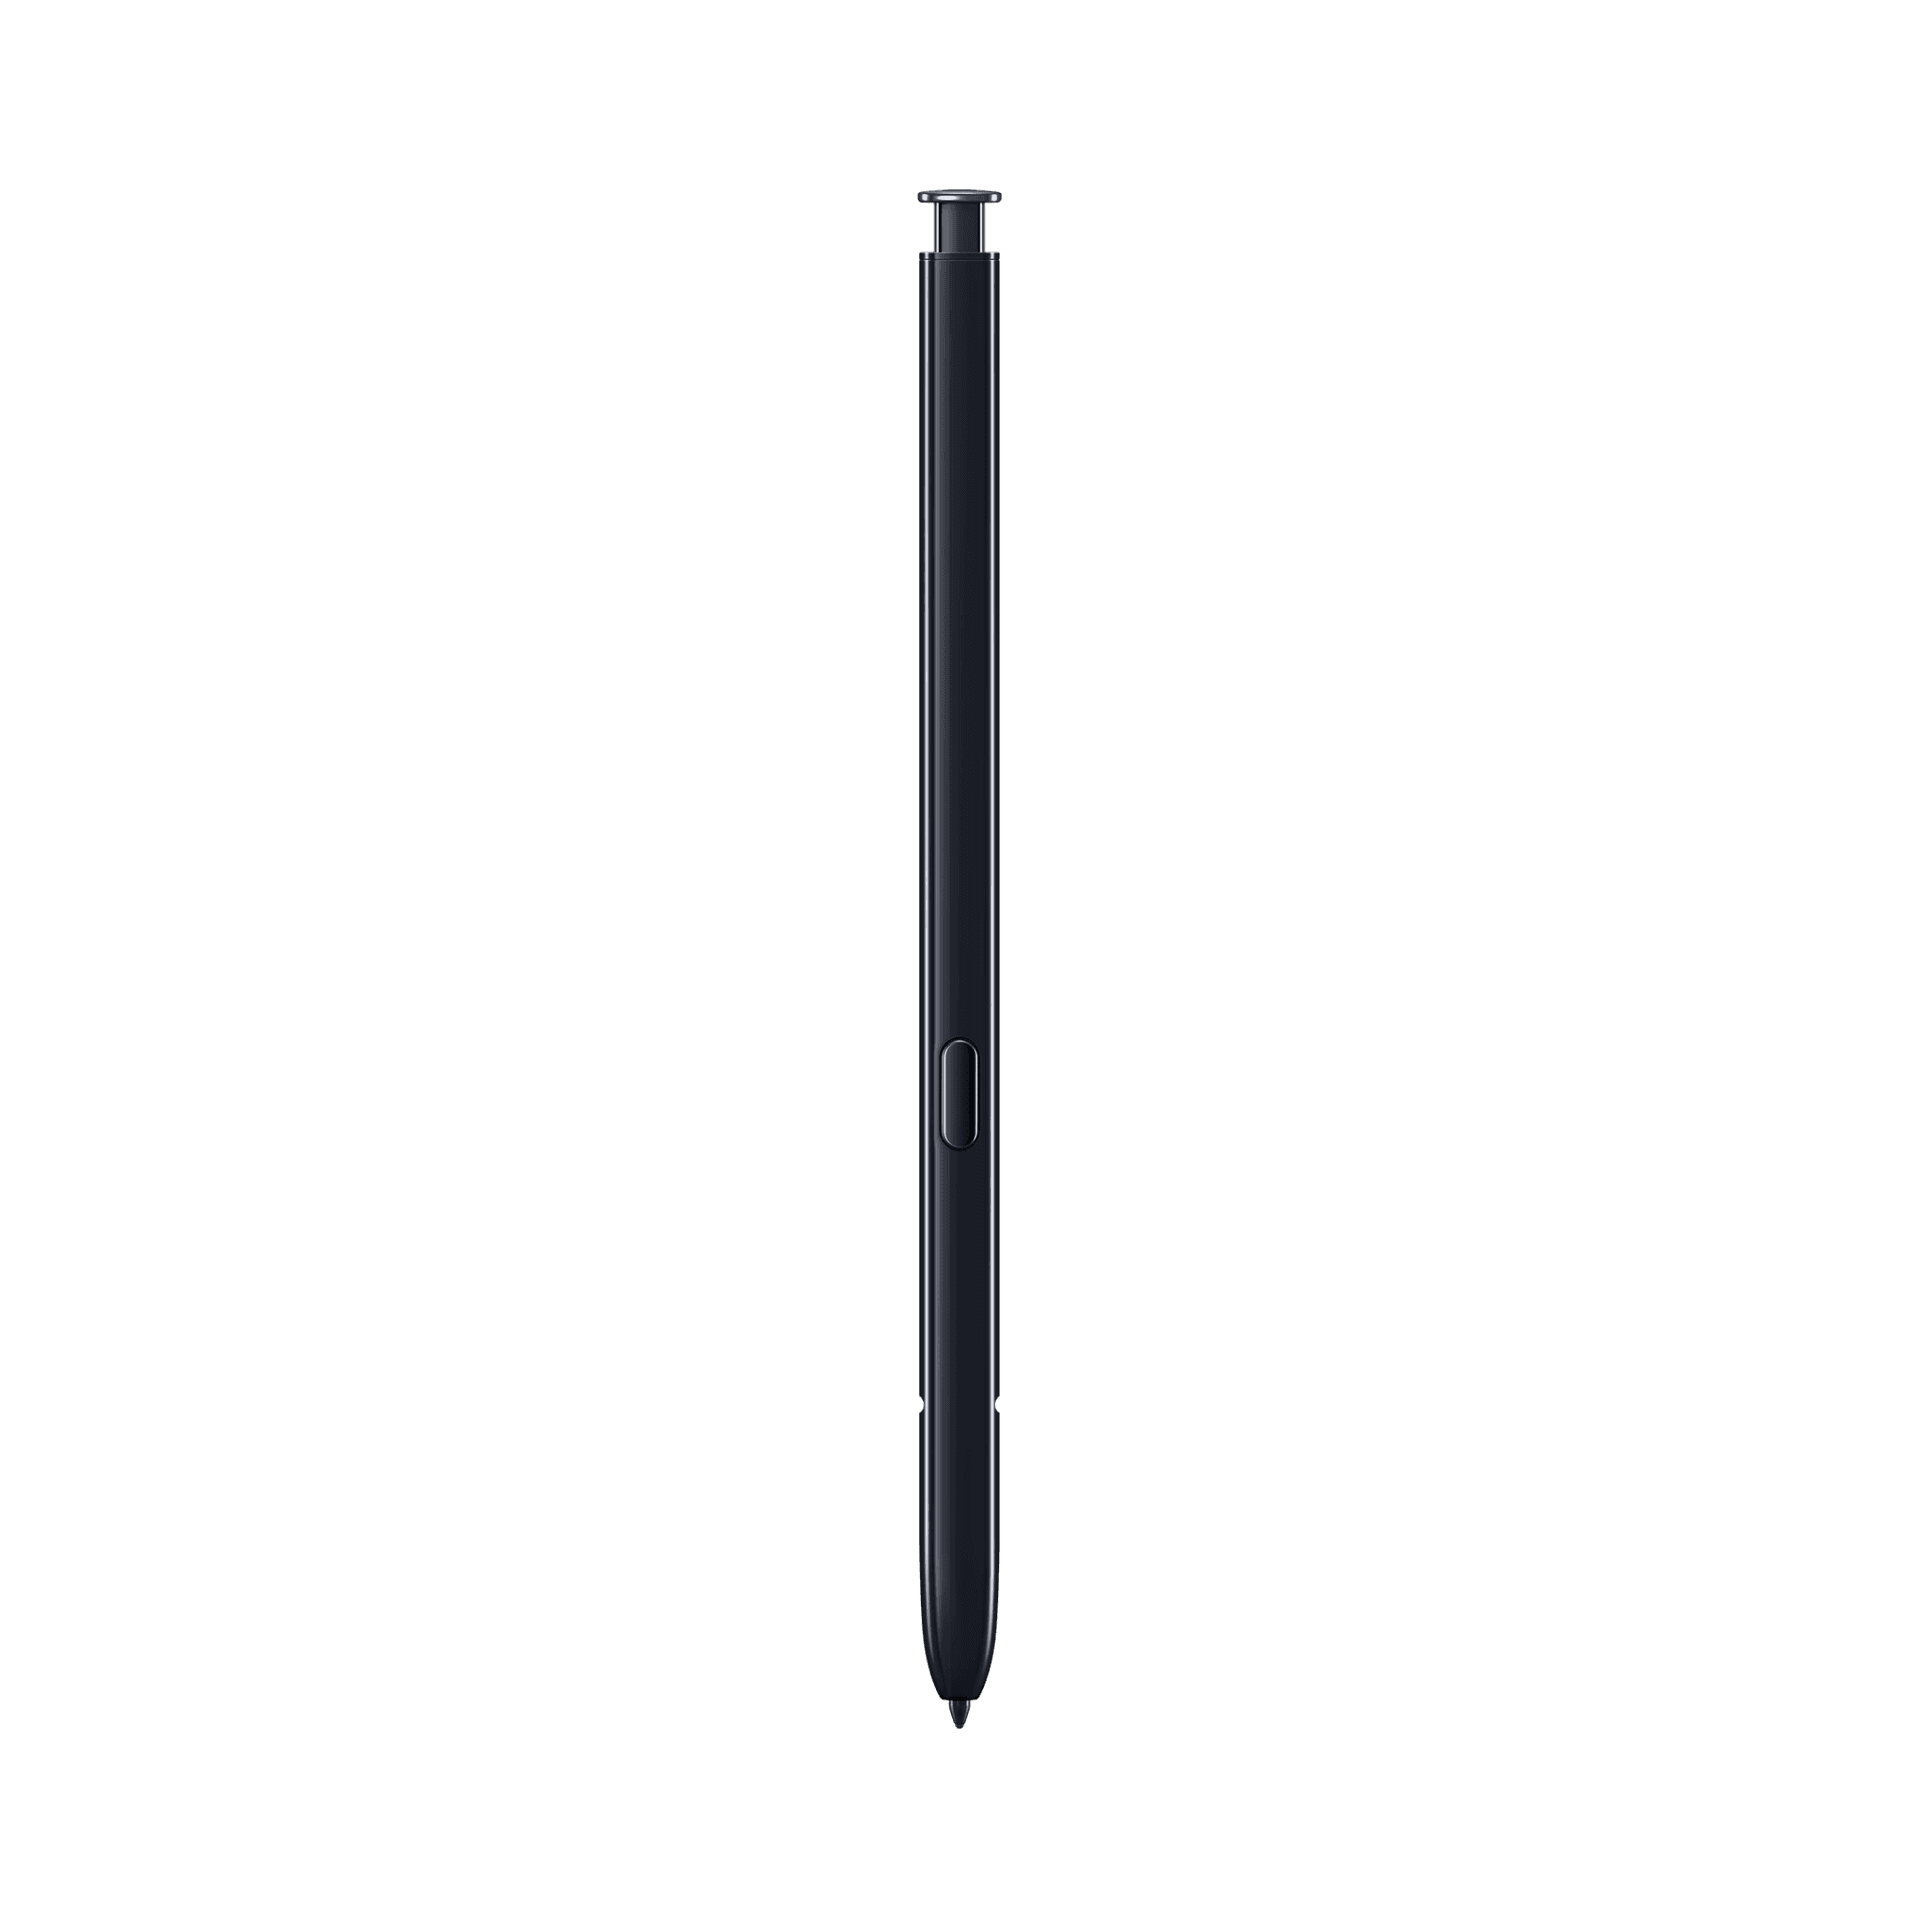 Samsung Galaxy Note 10 Plus - 256 GB - Aura Siyahı